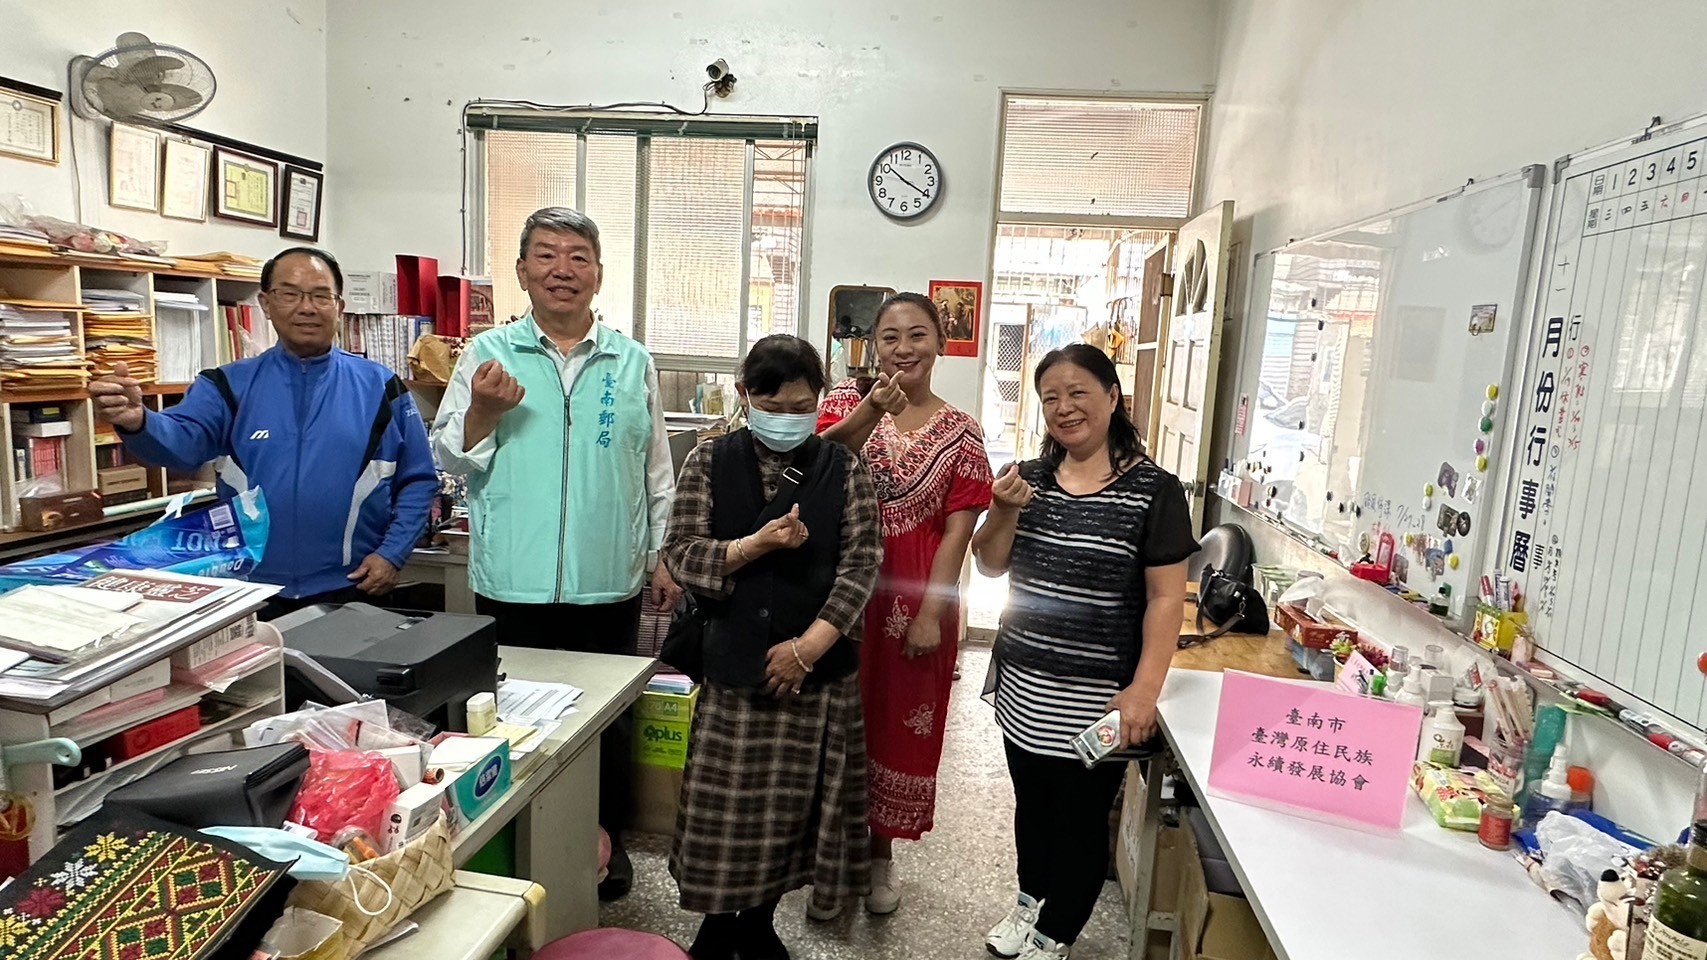 臺南郵局挺小農 行銷文旦捐贈物資關懷原住民永續發展協會